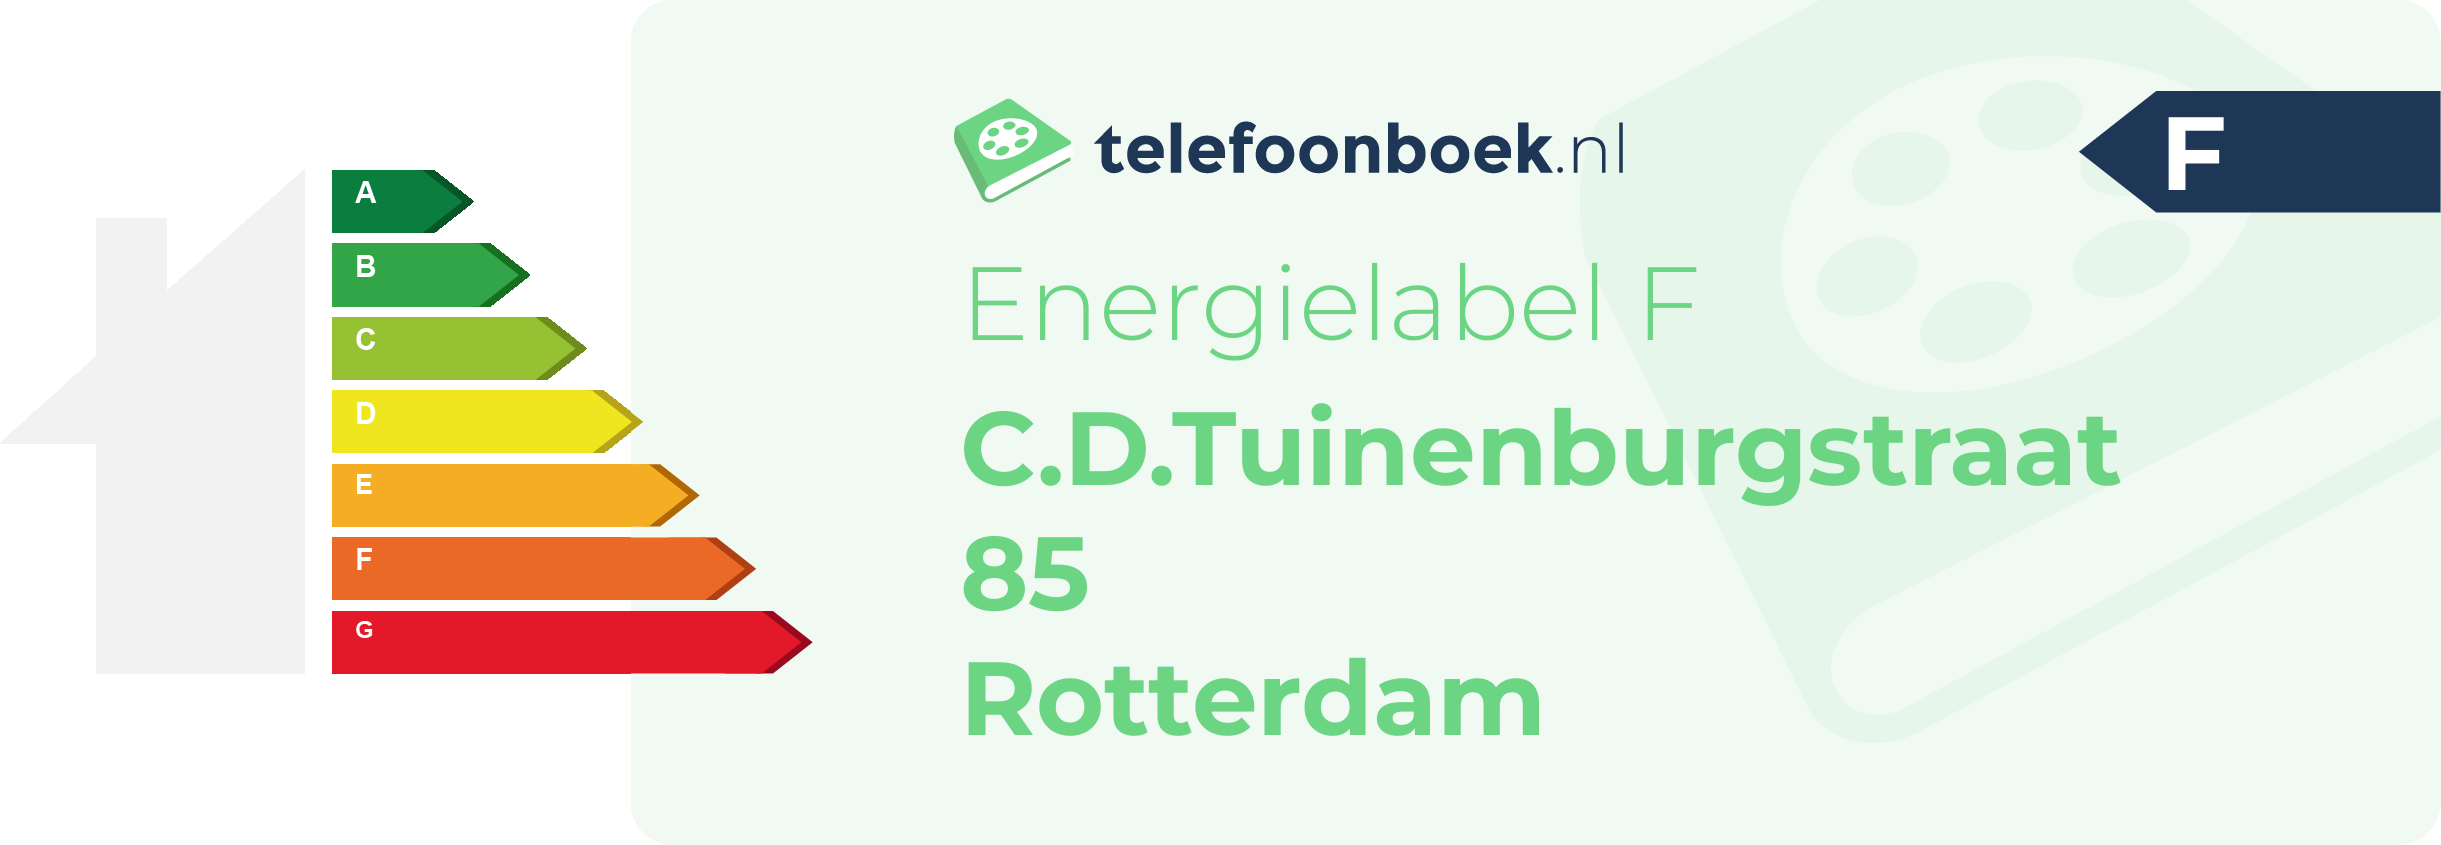 Energielabel C.D.Tuinenburgstraat 85 Rotterdam